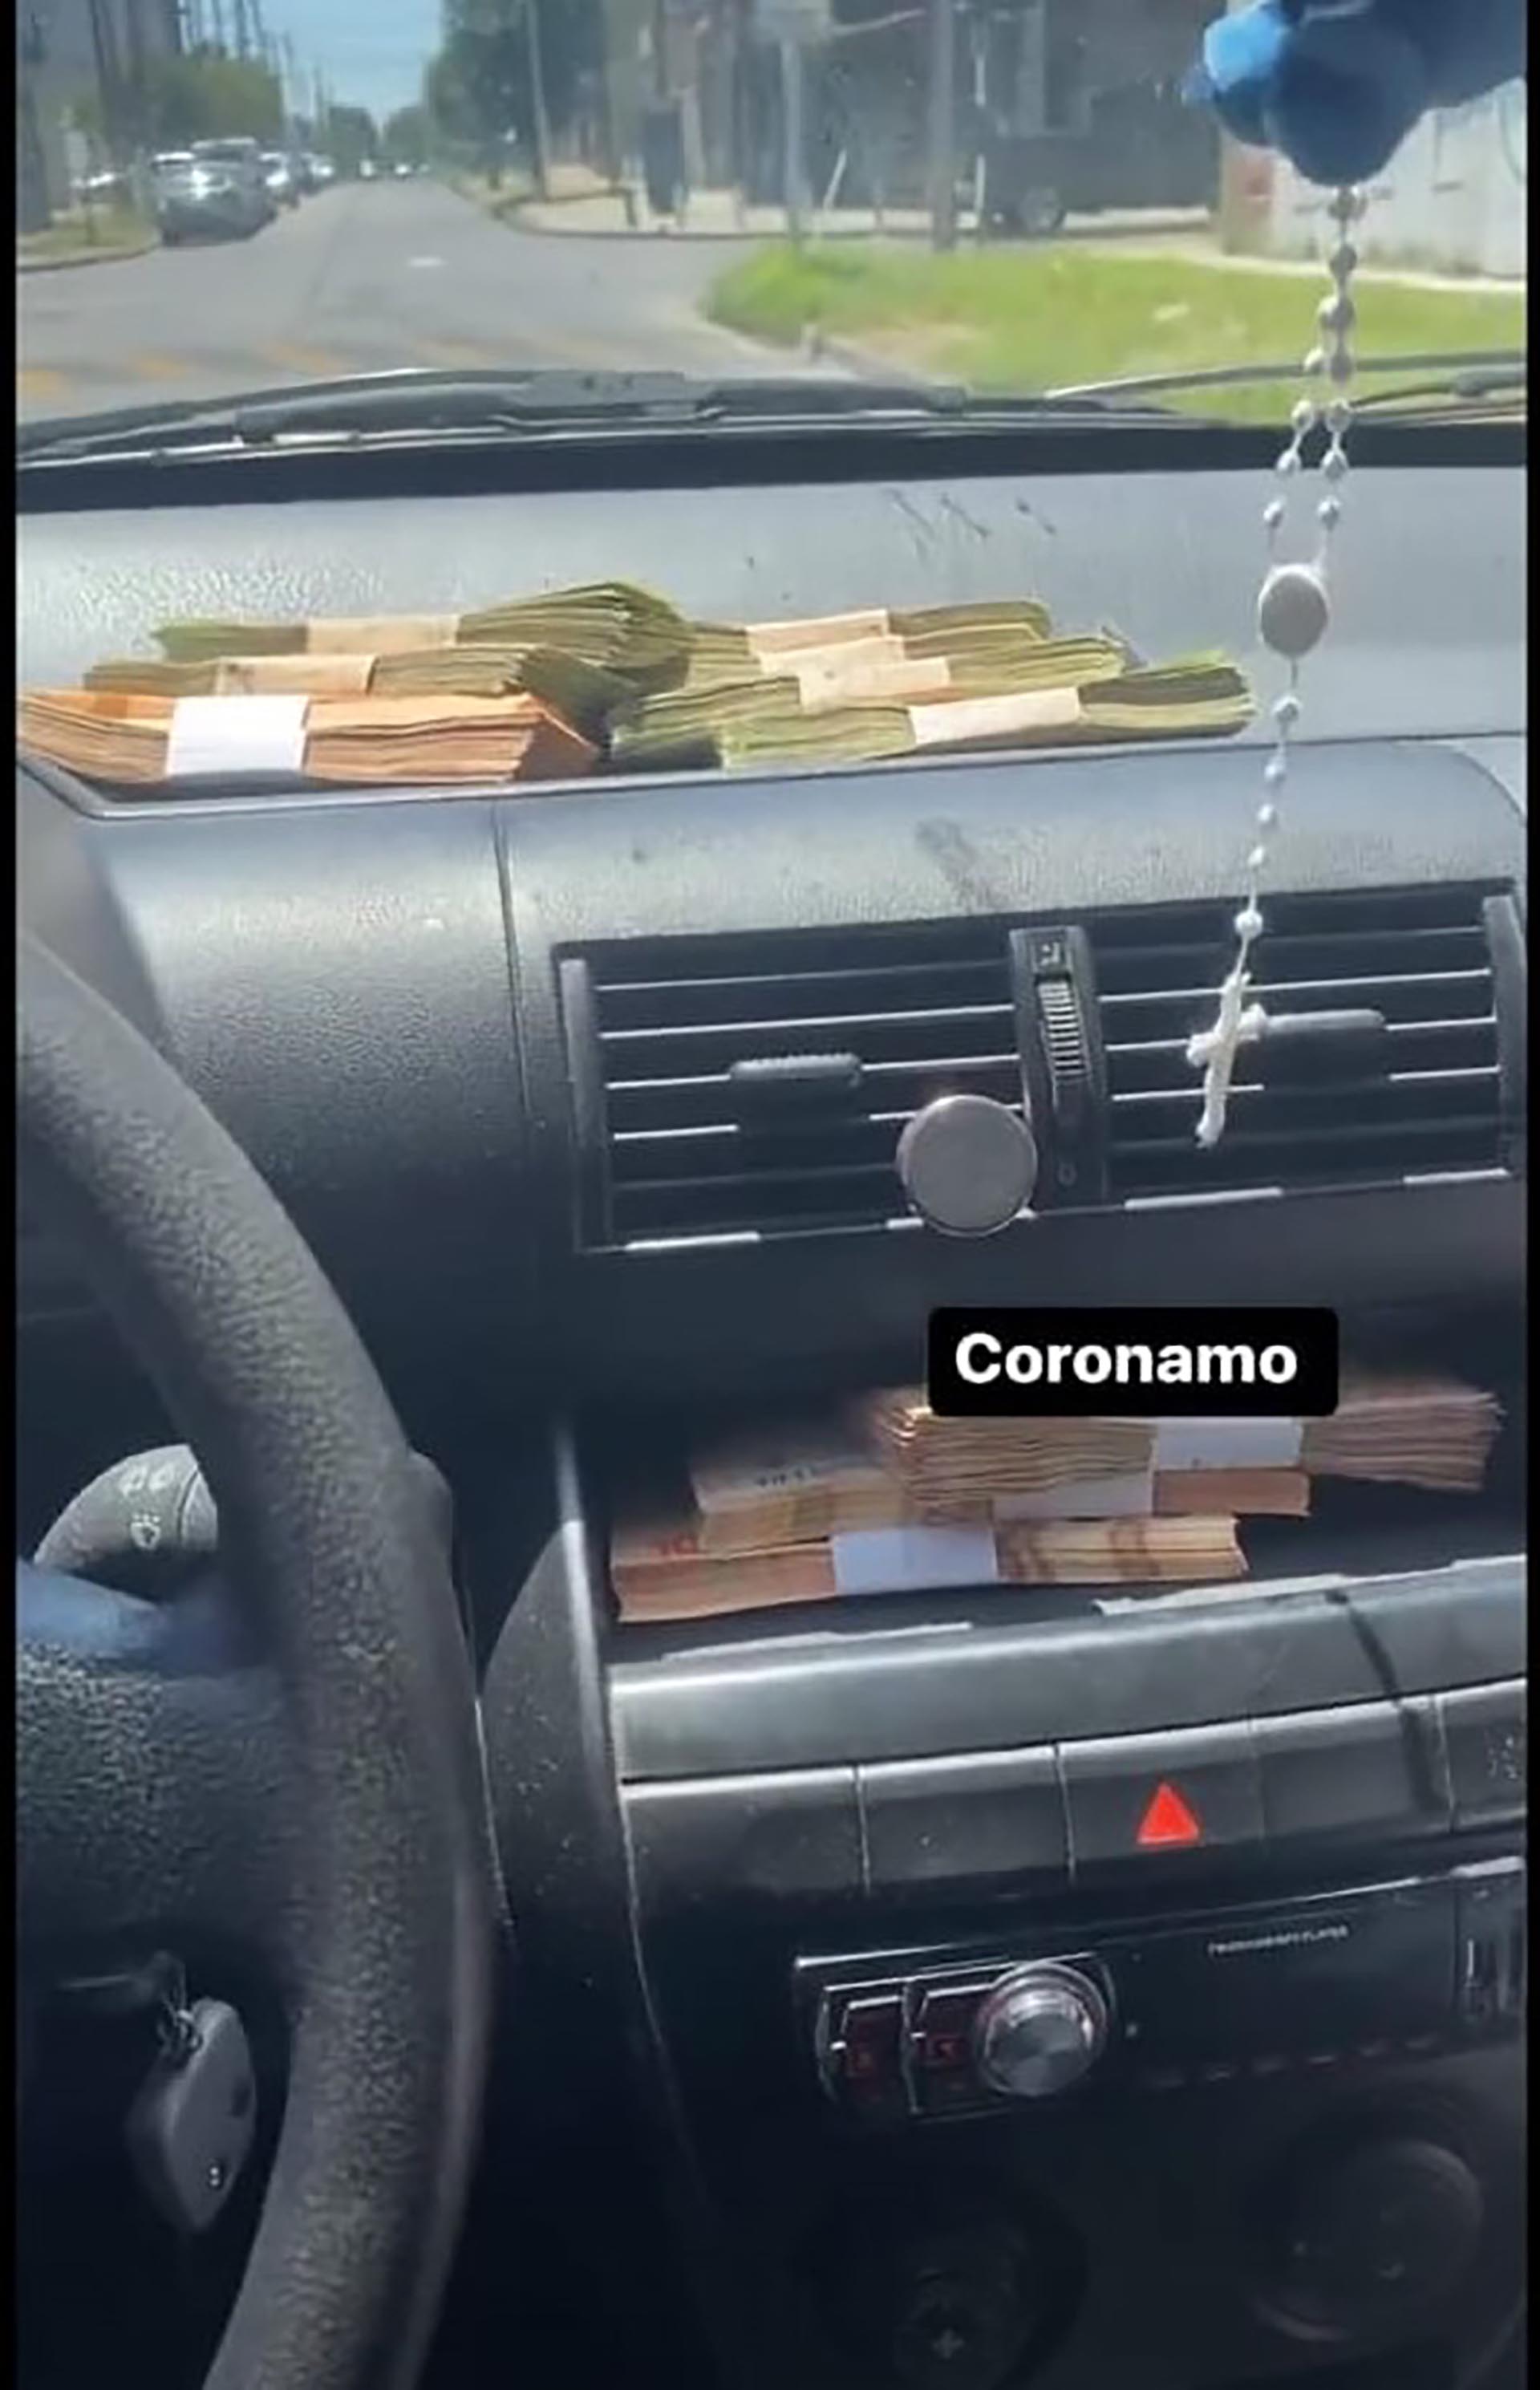 "Coronamo", el festejo del oficial en las redes tras cometer el robo a punta de pistola